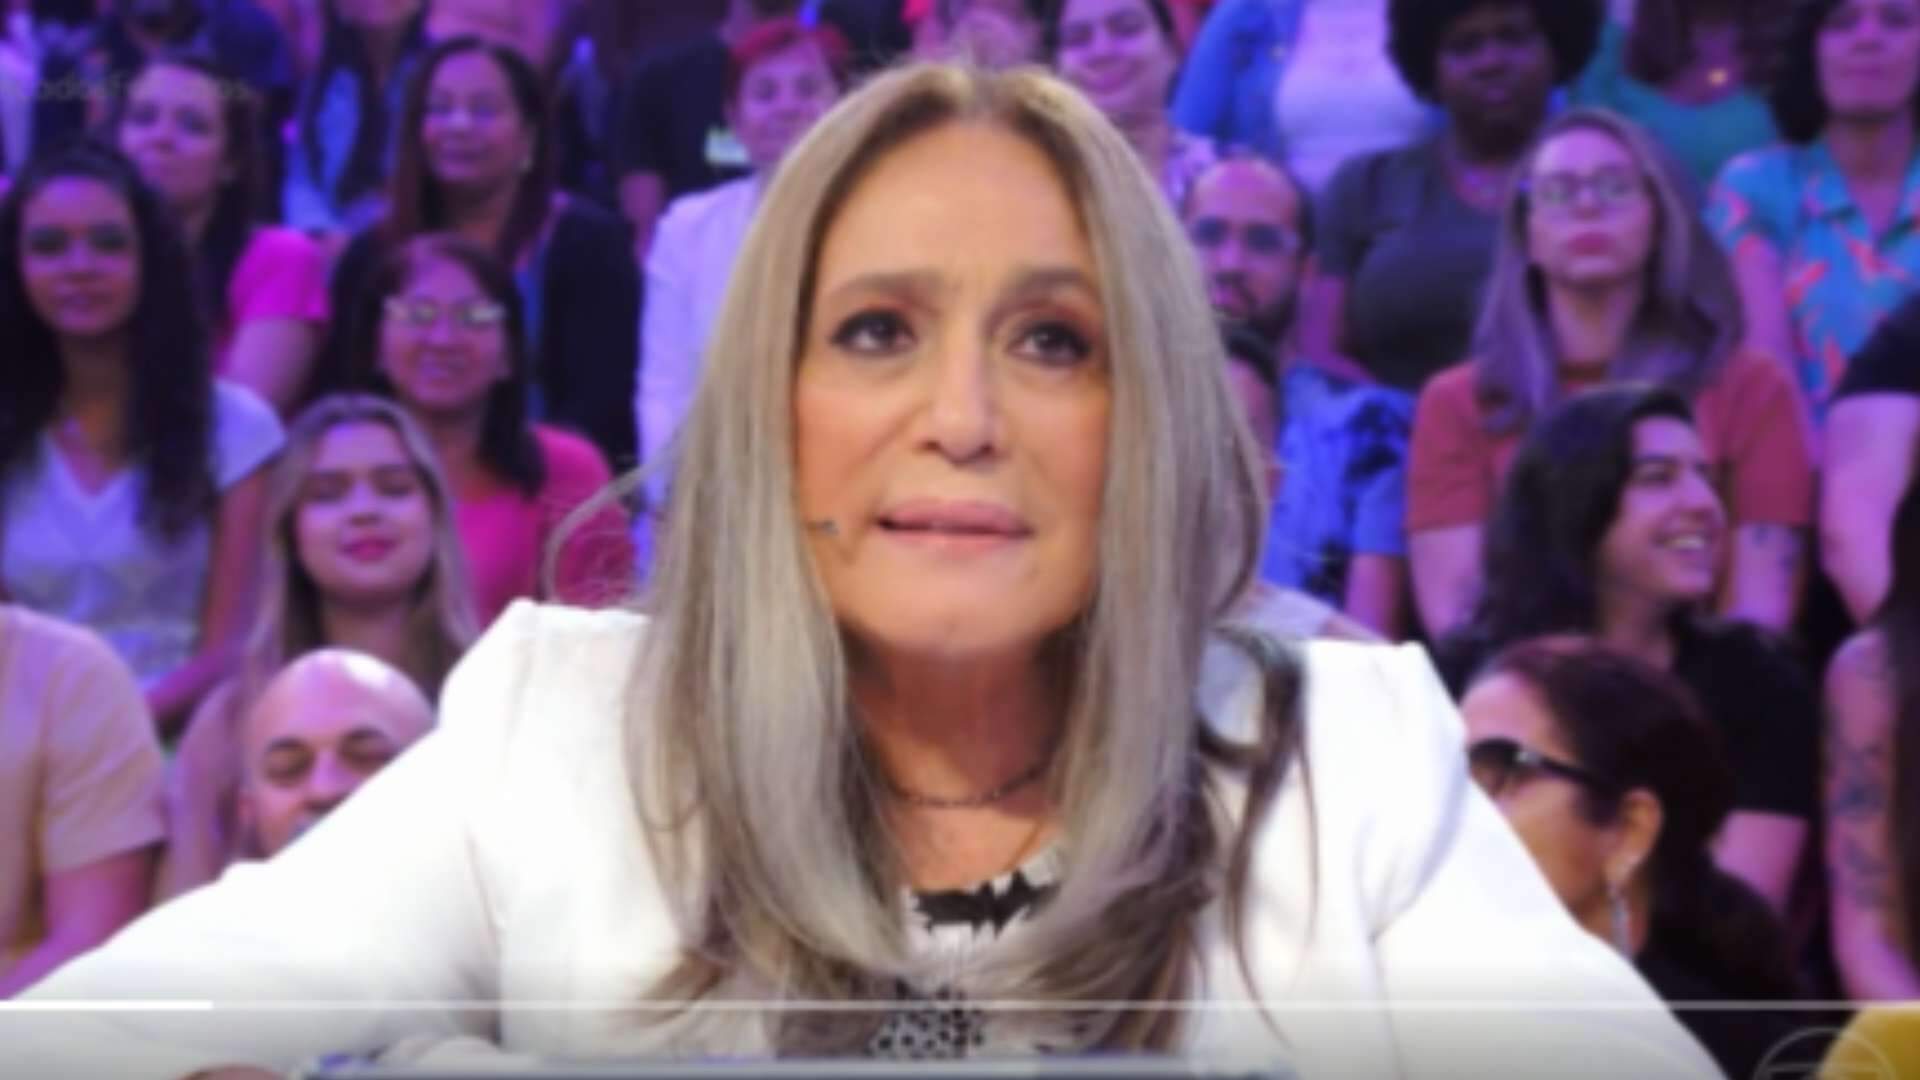 Susana Vieira fala o que não devia ao vivo e expõe situação em baile funk: “Com Bruno Gagliasso”